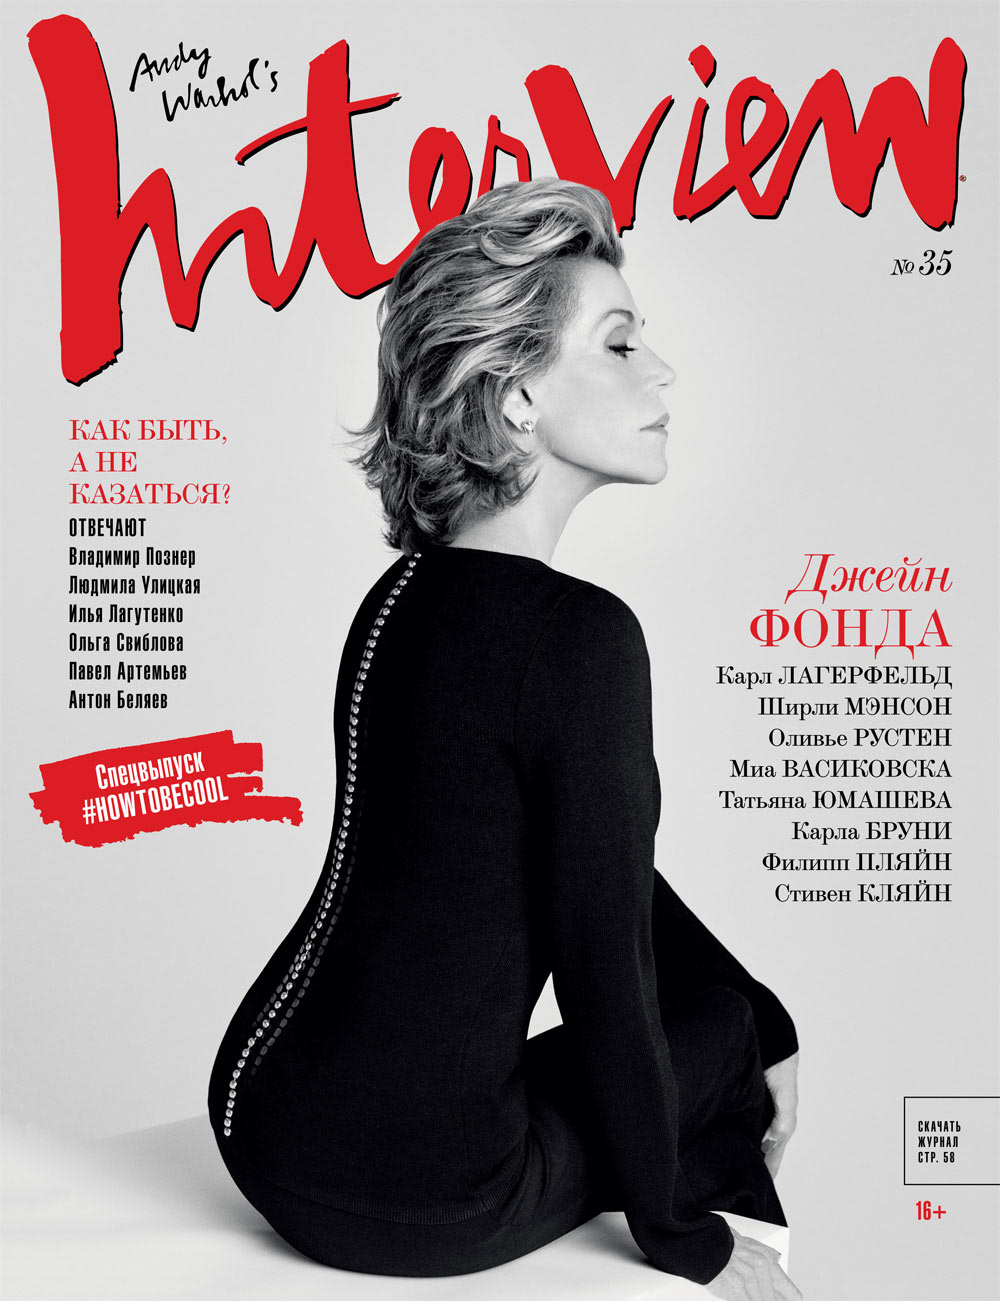 Cover design for Interview magazine Russia 2011-2016.